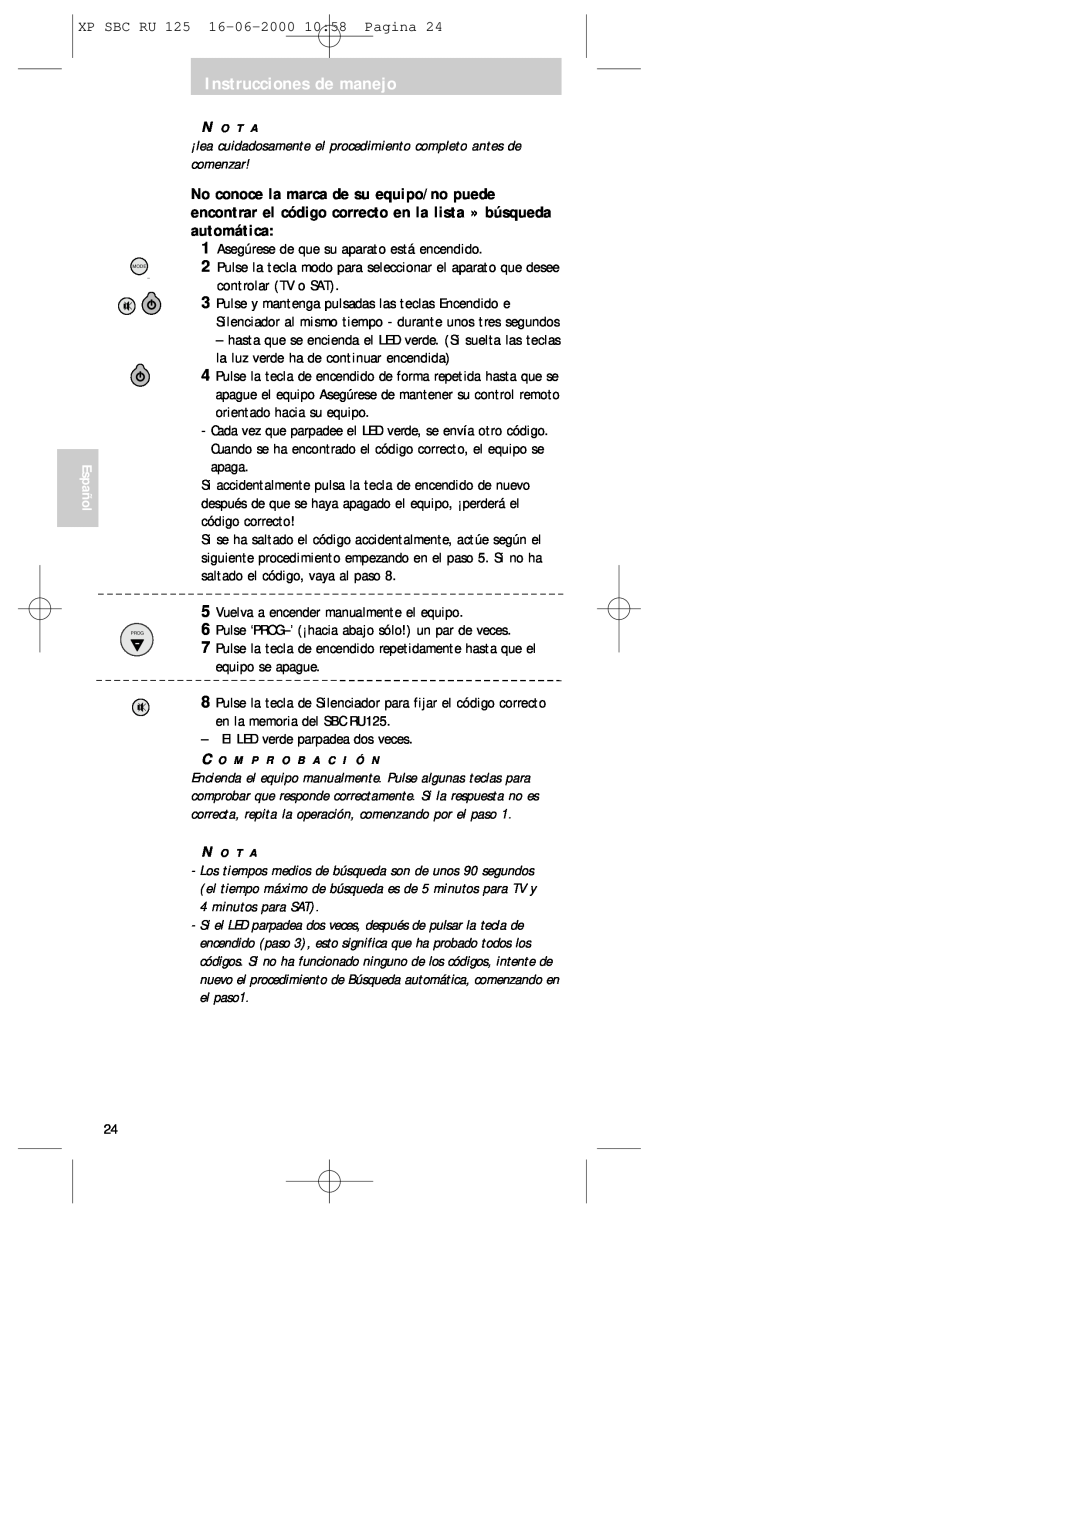 Philips RU125 manual XP SBC RU 125 16-06-200010 58 Pagina, Instrucciones de manejo, Español 